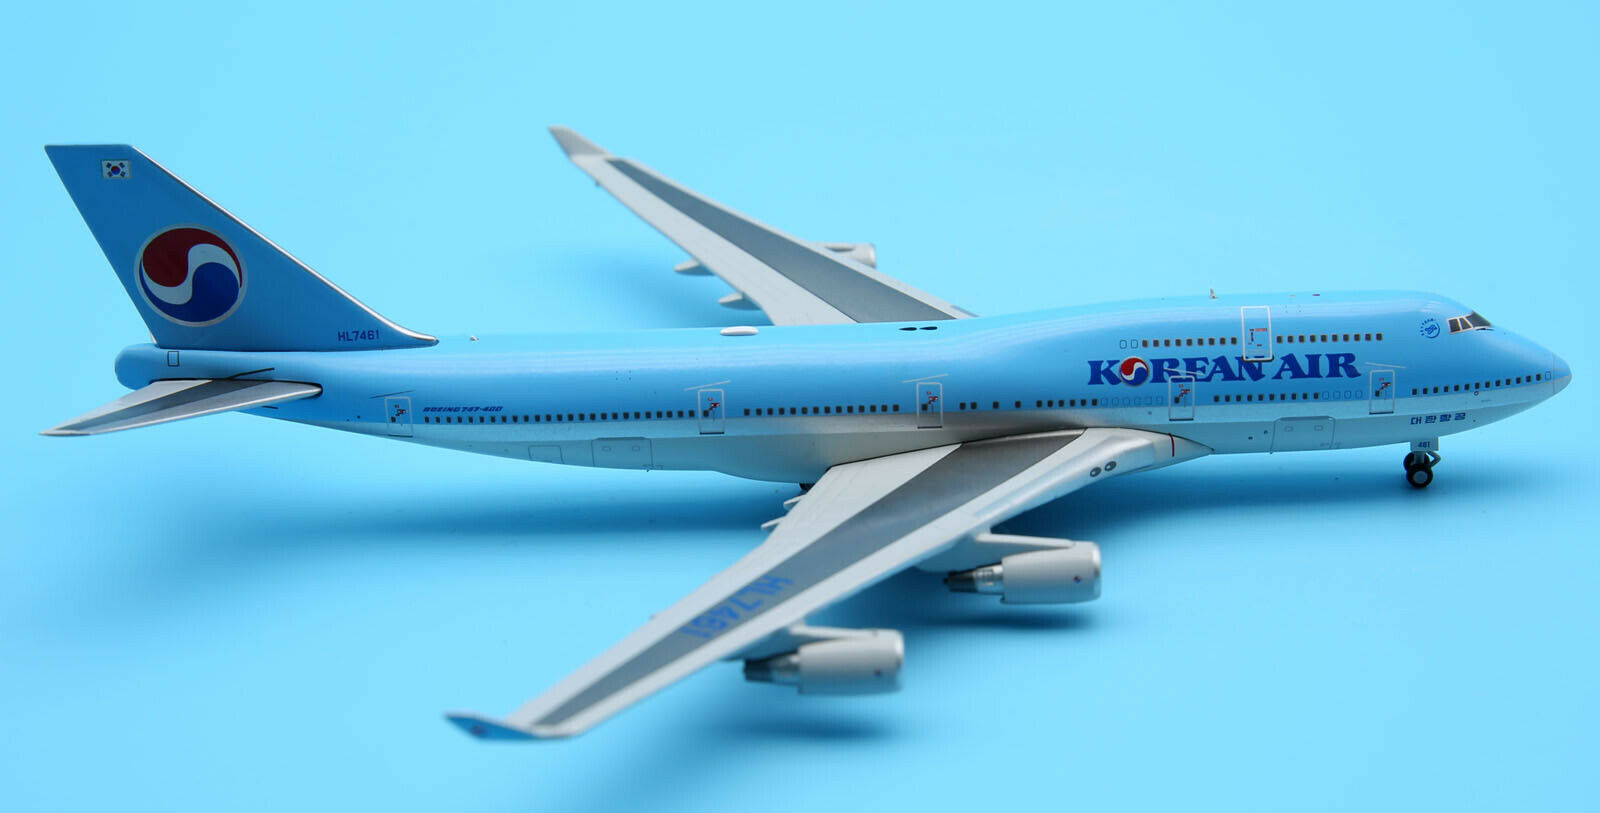 Boeing 747-400F 1 500 KOREAN AIR CARGO - 模型